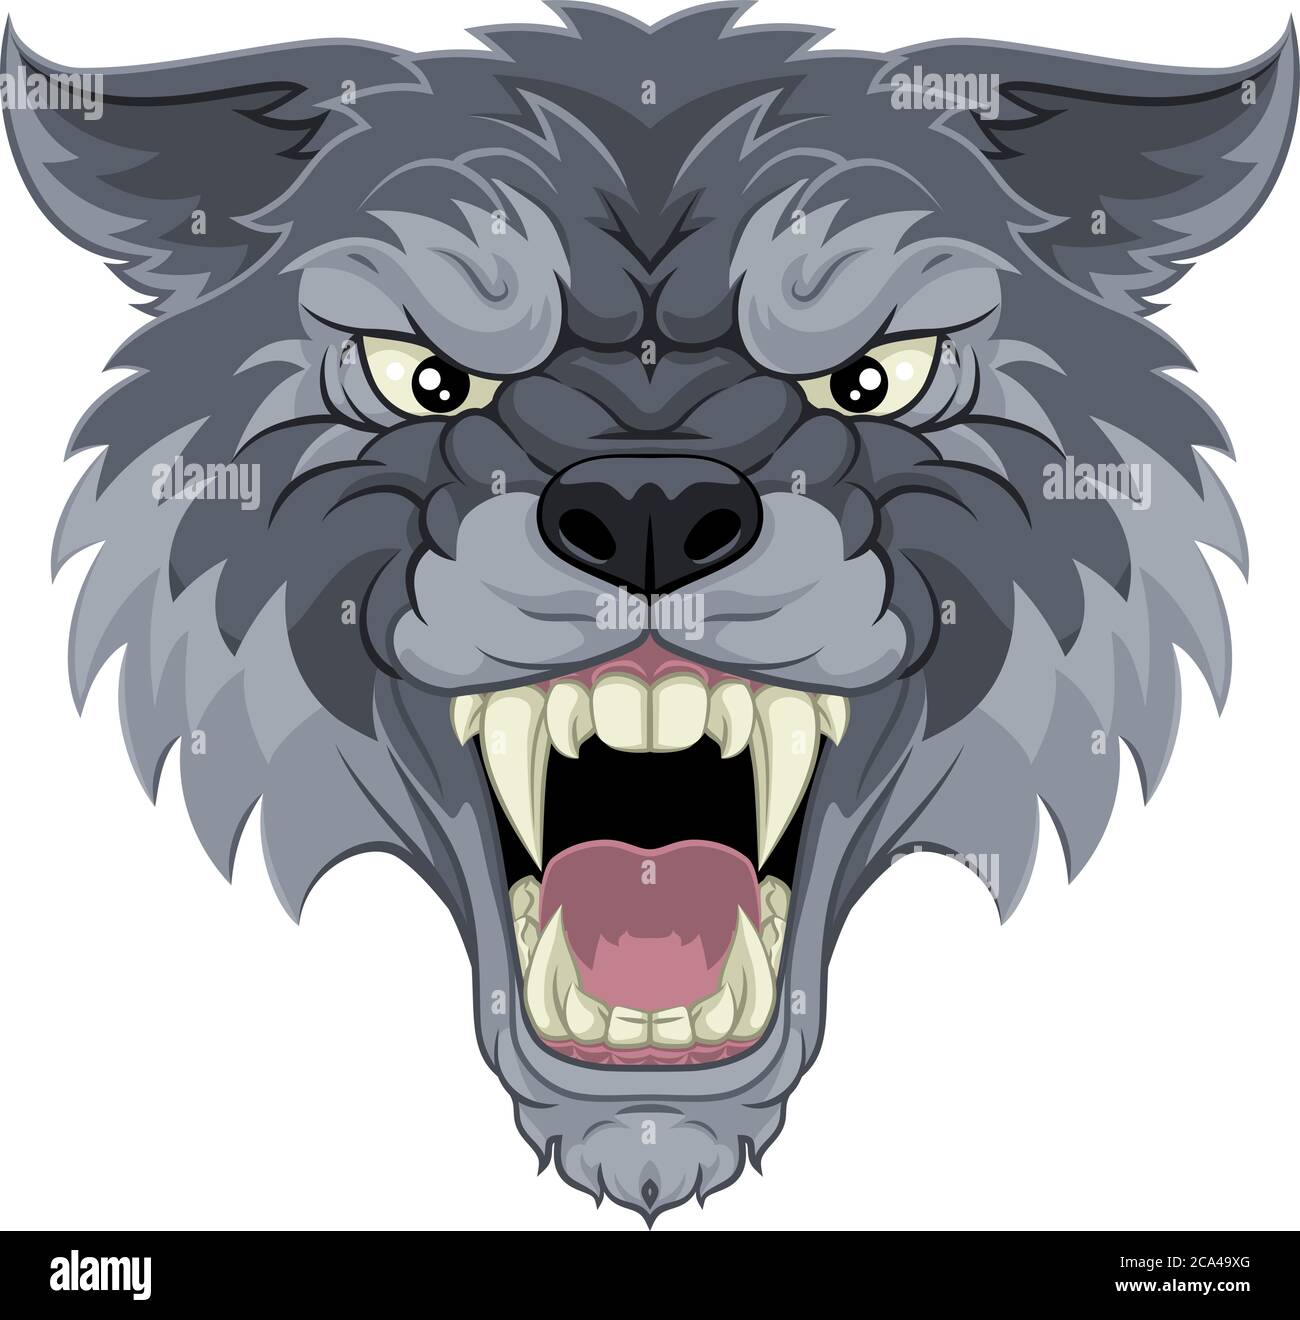 Loup ou Werewolf Monster carry chien Angry Mascot Illustration de Vecteur